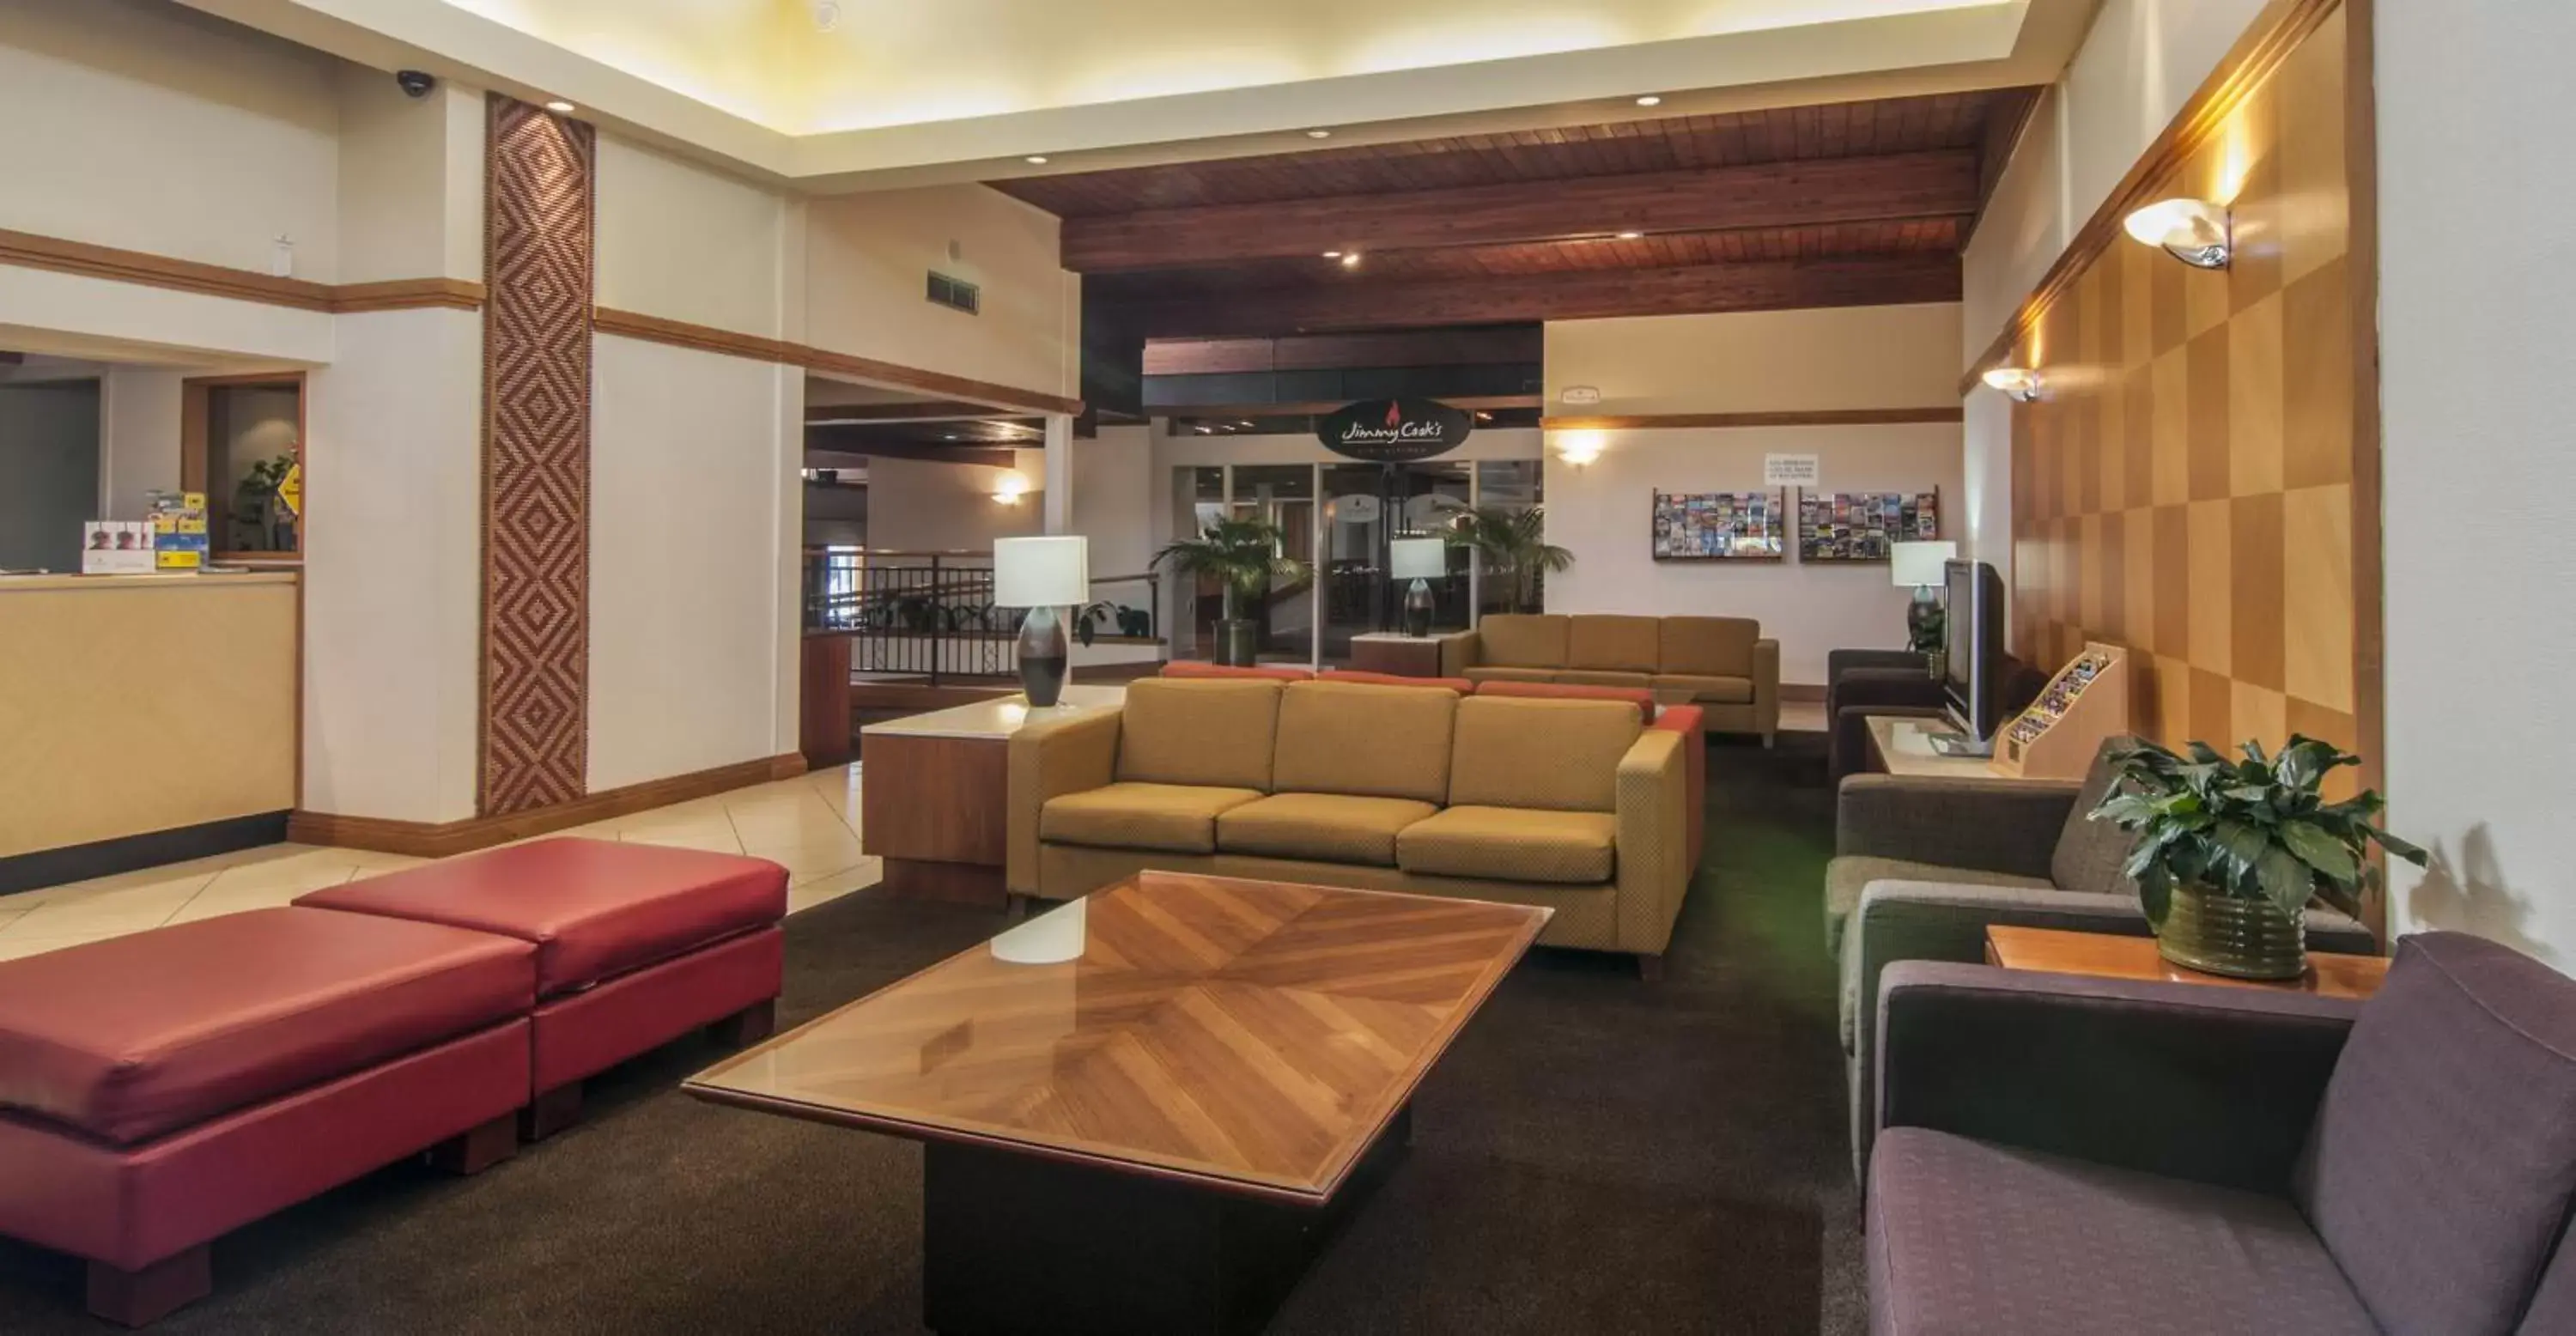 Lobby or reception, Lobby/Reception in Copthorne Hotel Rotorua